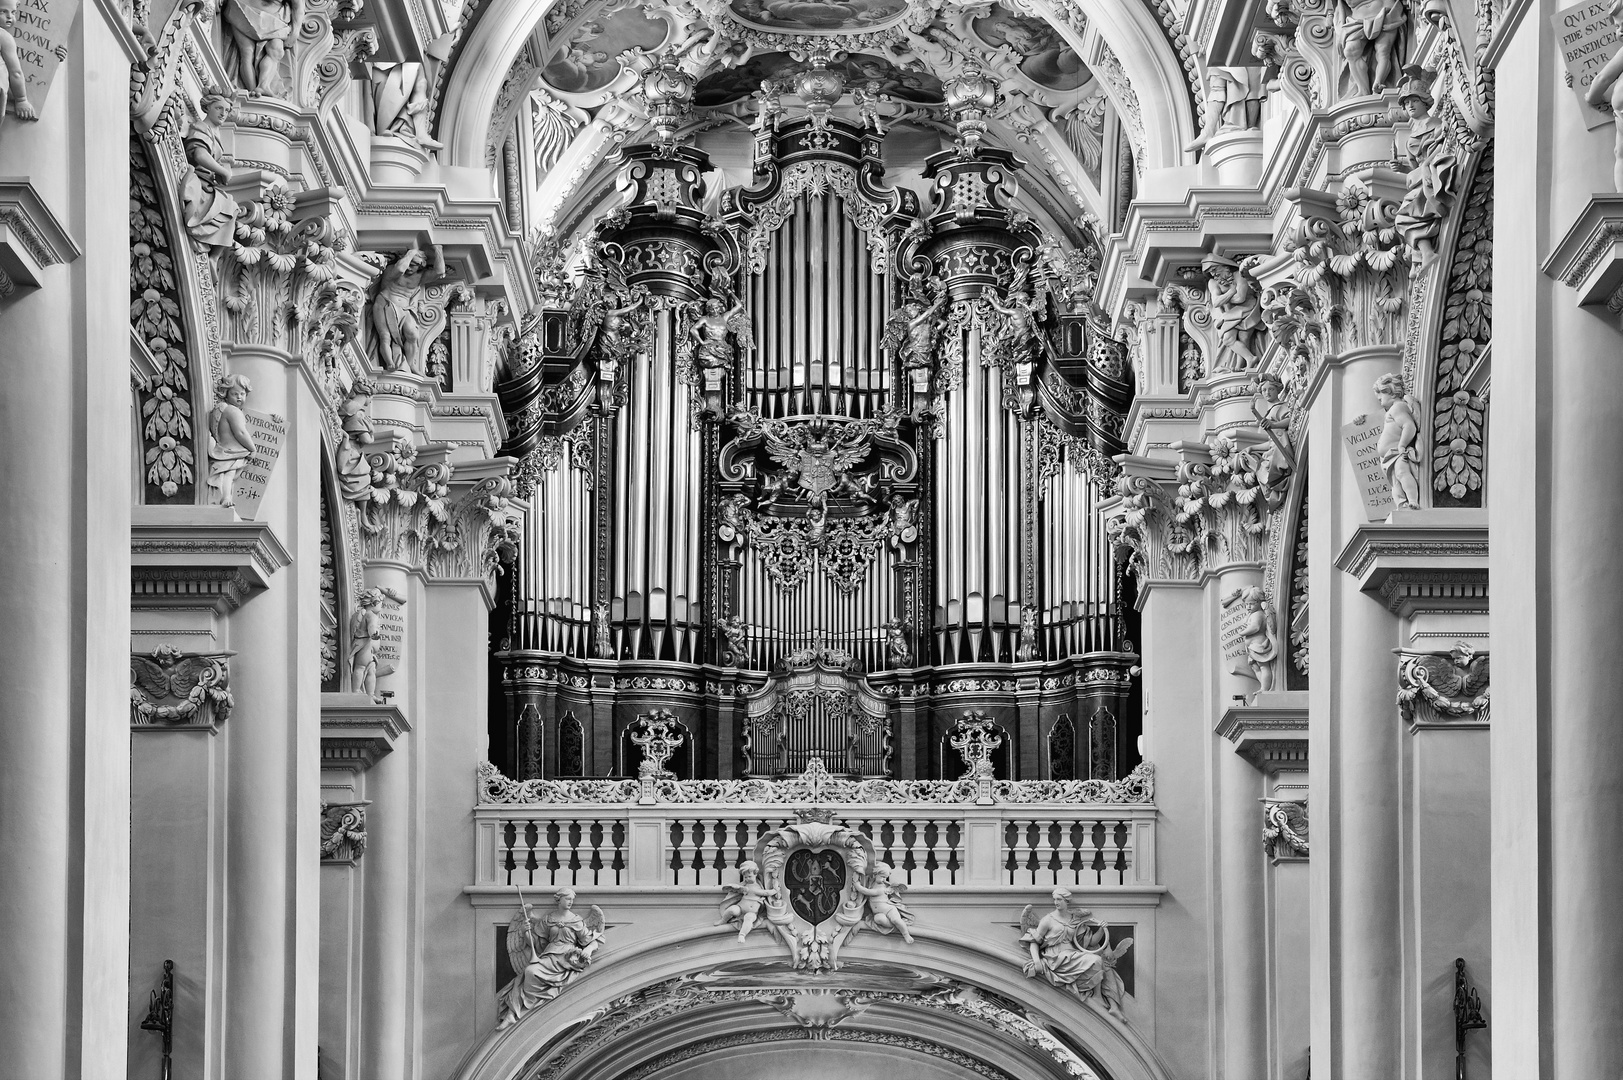 Orgel im Passauer Dom (s/w)